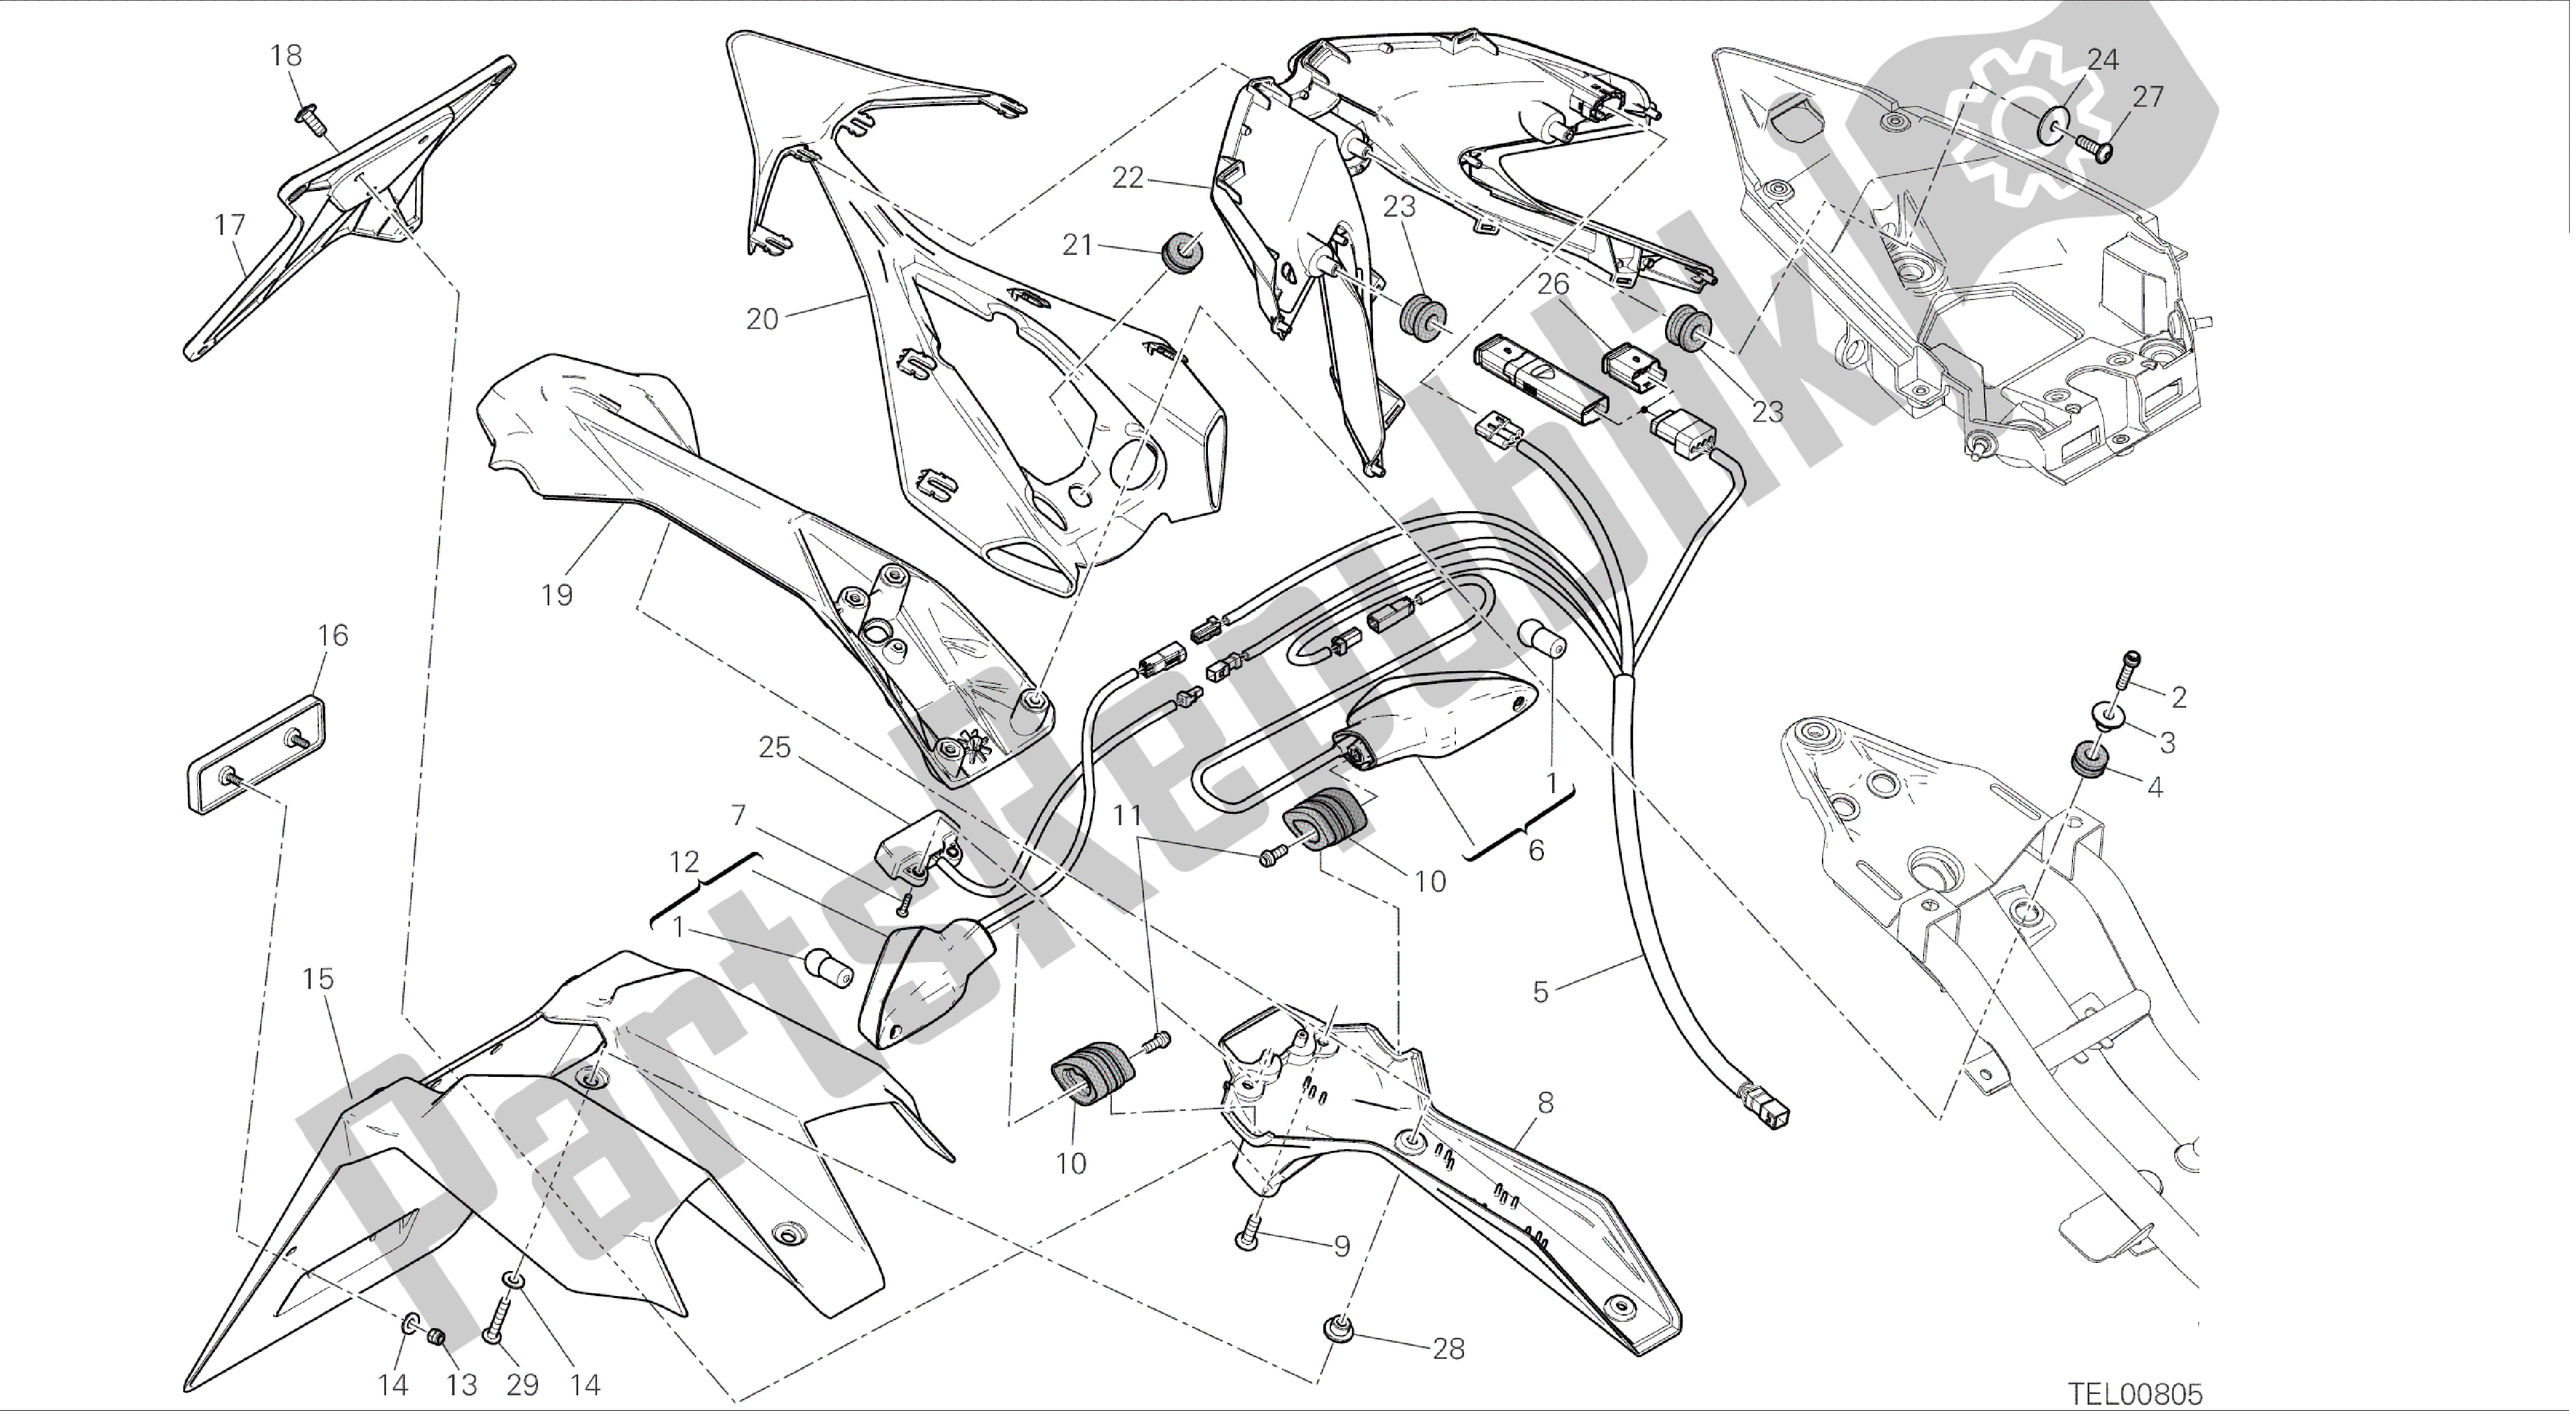 Alle onderdelen voor de Tekening 27b - Kentekenplaathouder - Achterlicht - (aus) [mod: 899 Abs; Xst: Aus] Groepsframe van de Ducati Panigale 899 2014